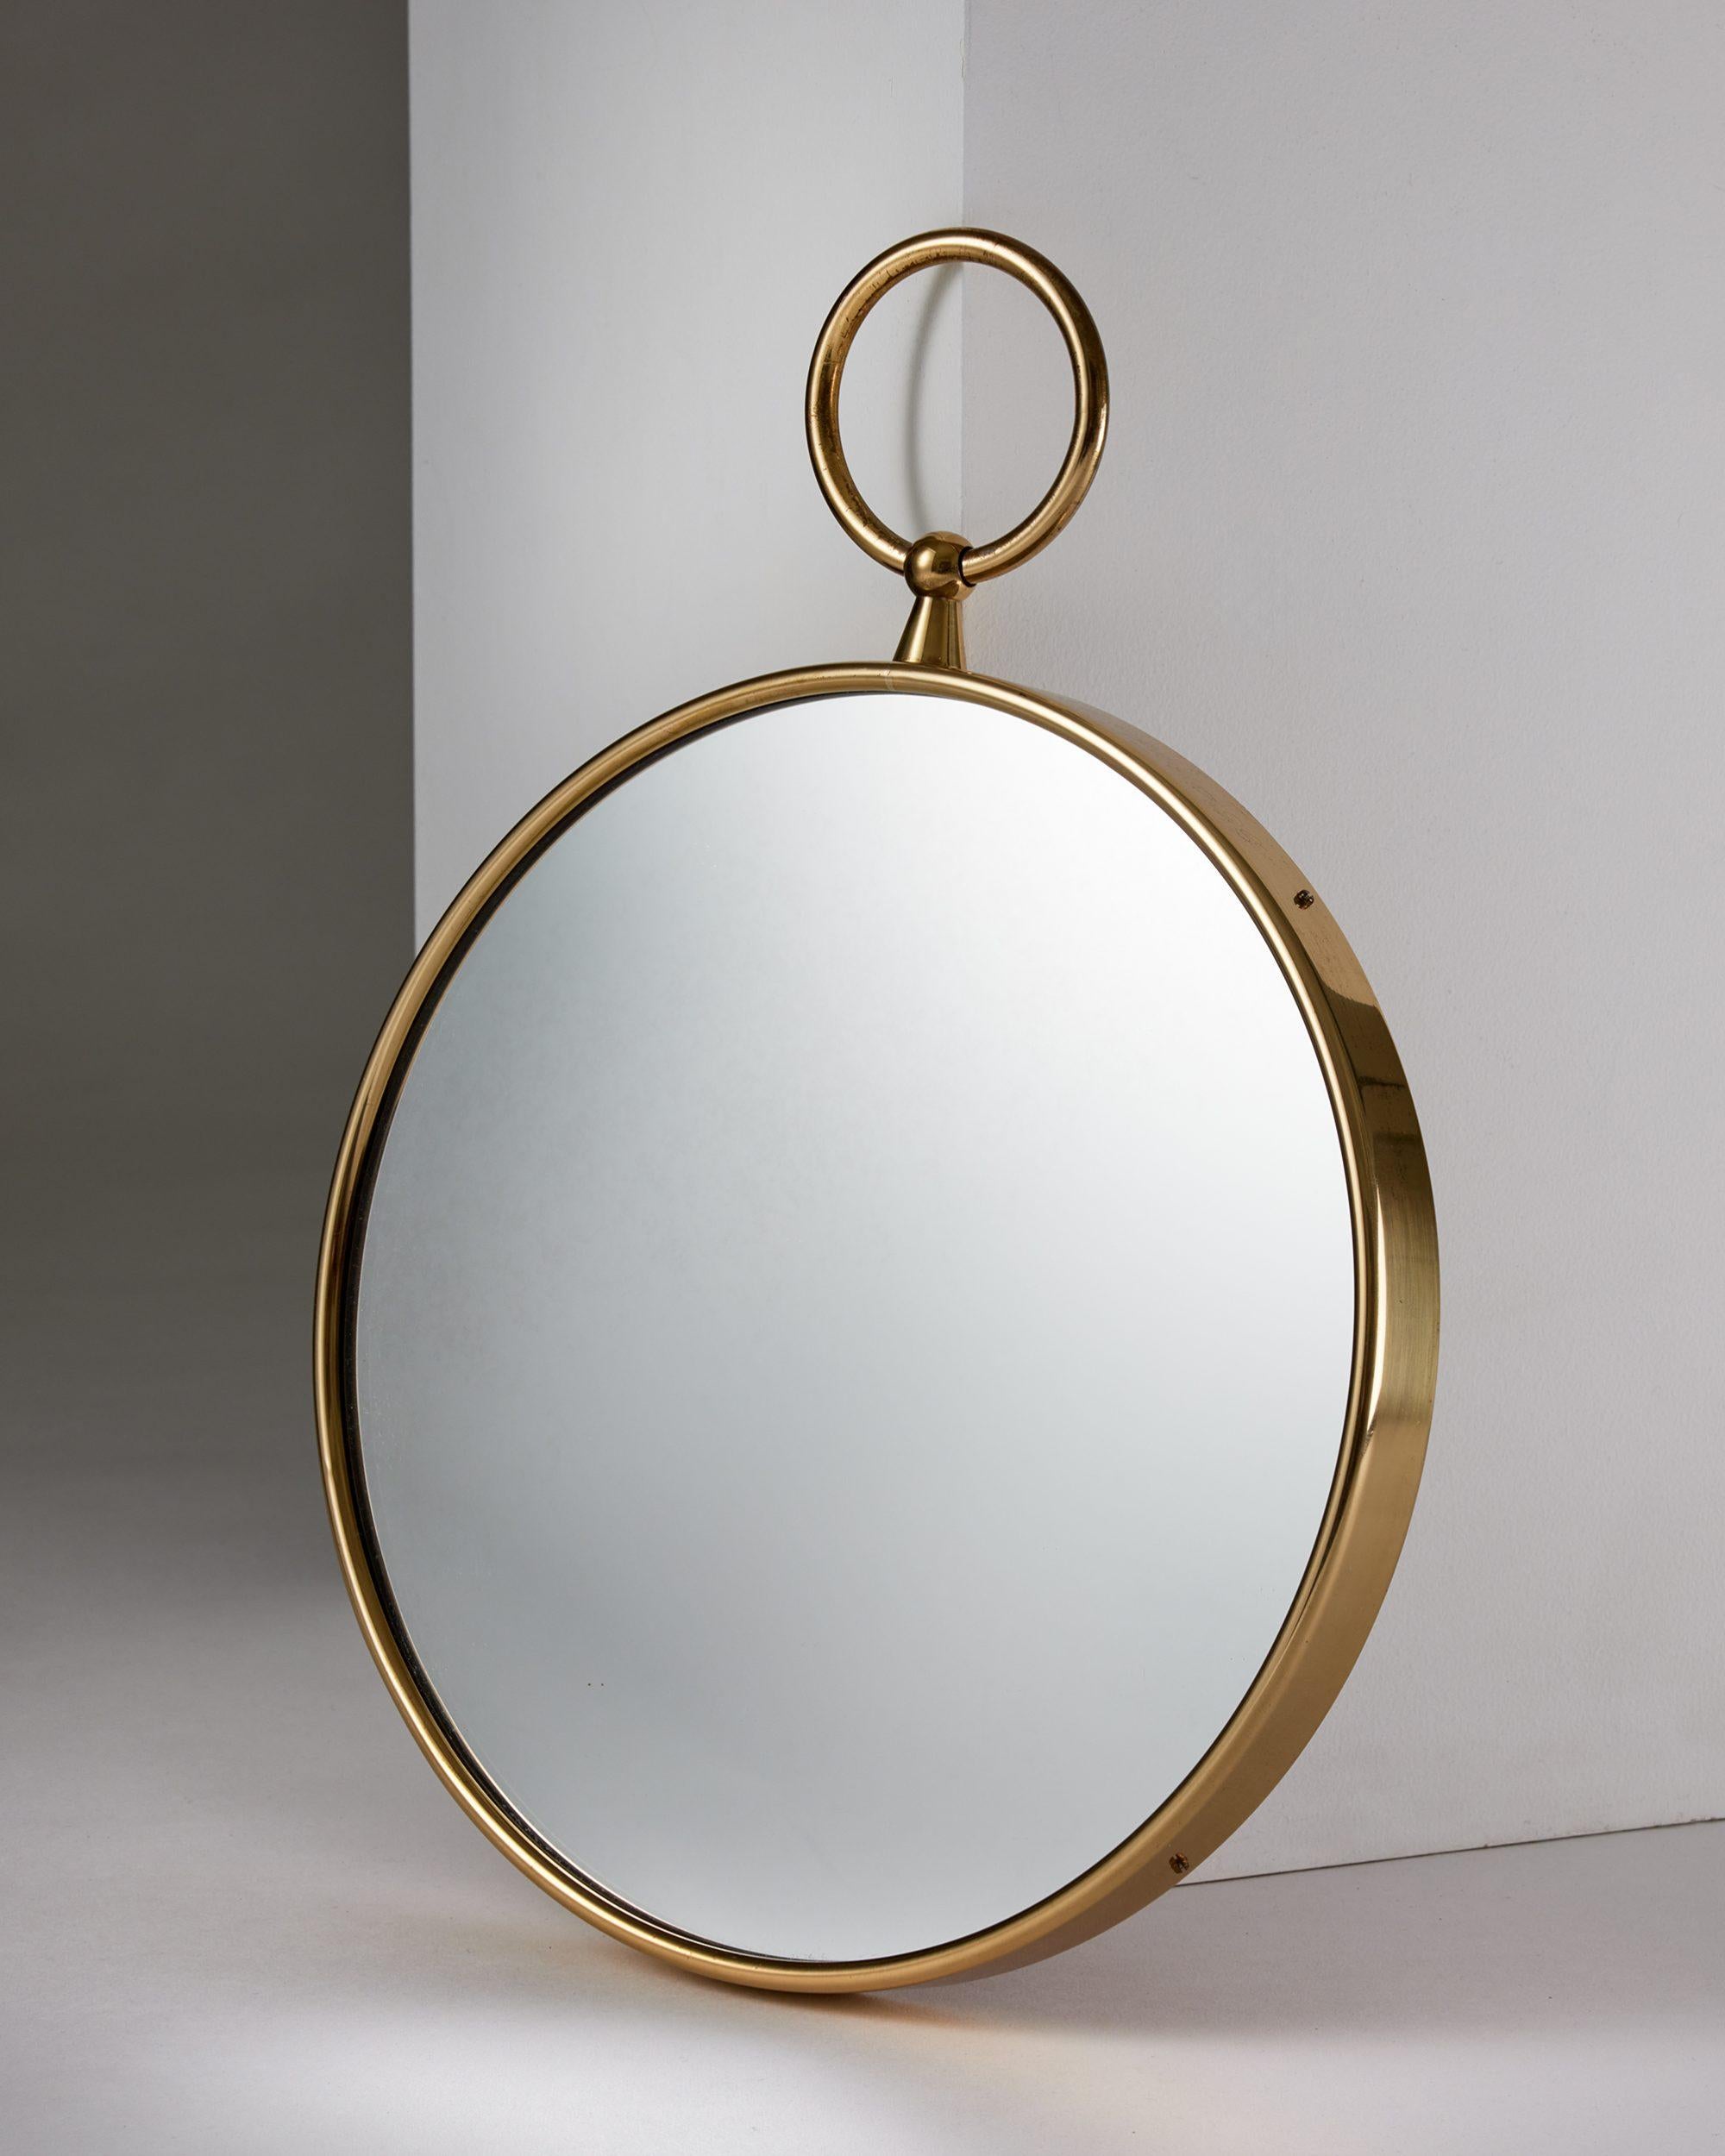 Runder Spiegel, entworfen von Piero Fornasetti für Svenskt Tenn,
Schweden, 1980er Jahre.

Messing und verspiegeltes Glas.